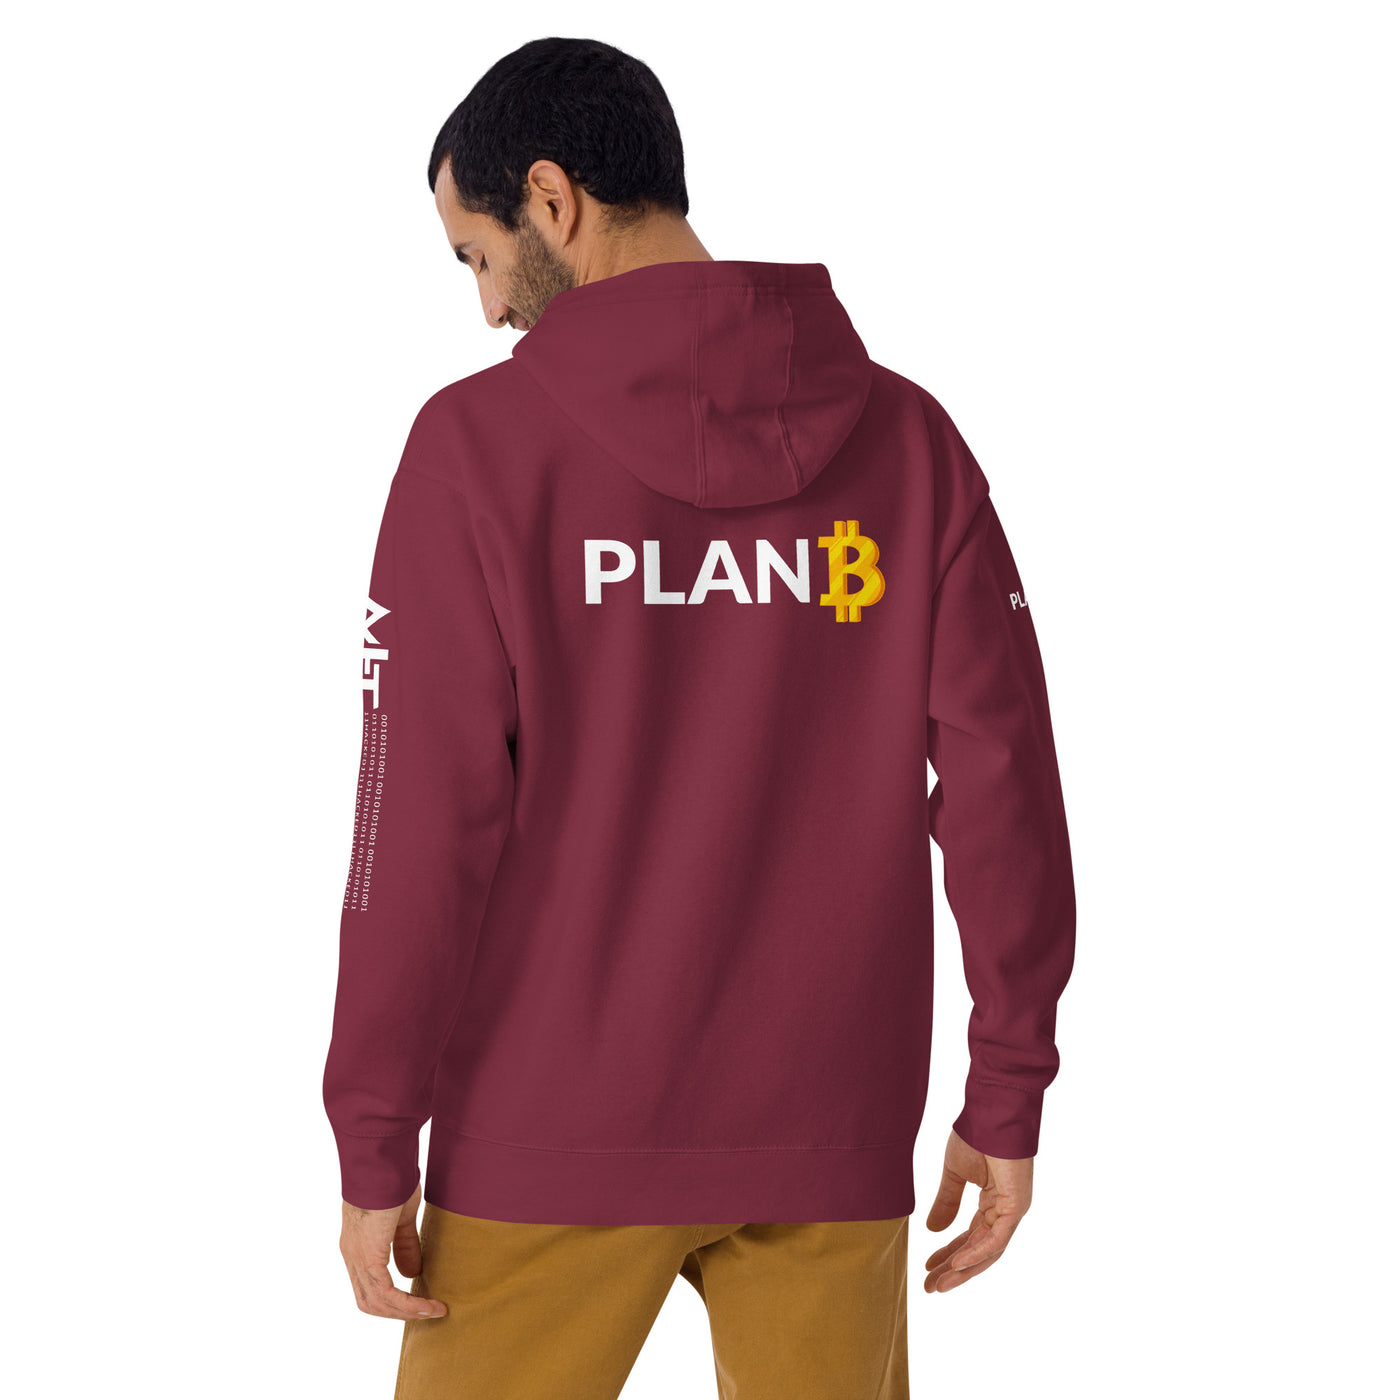 Plan B v1 - Unisex Hoodie (back print)